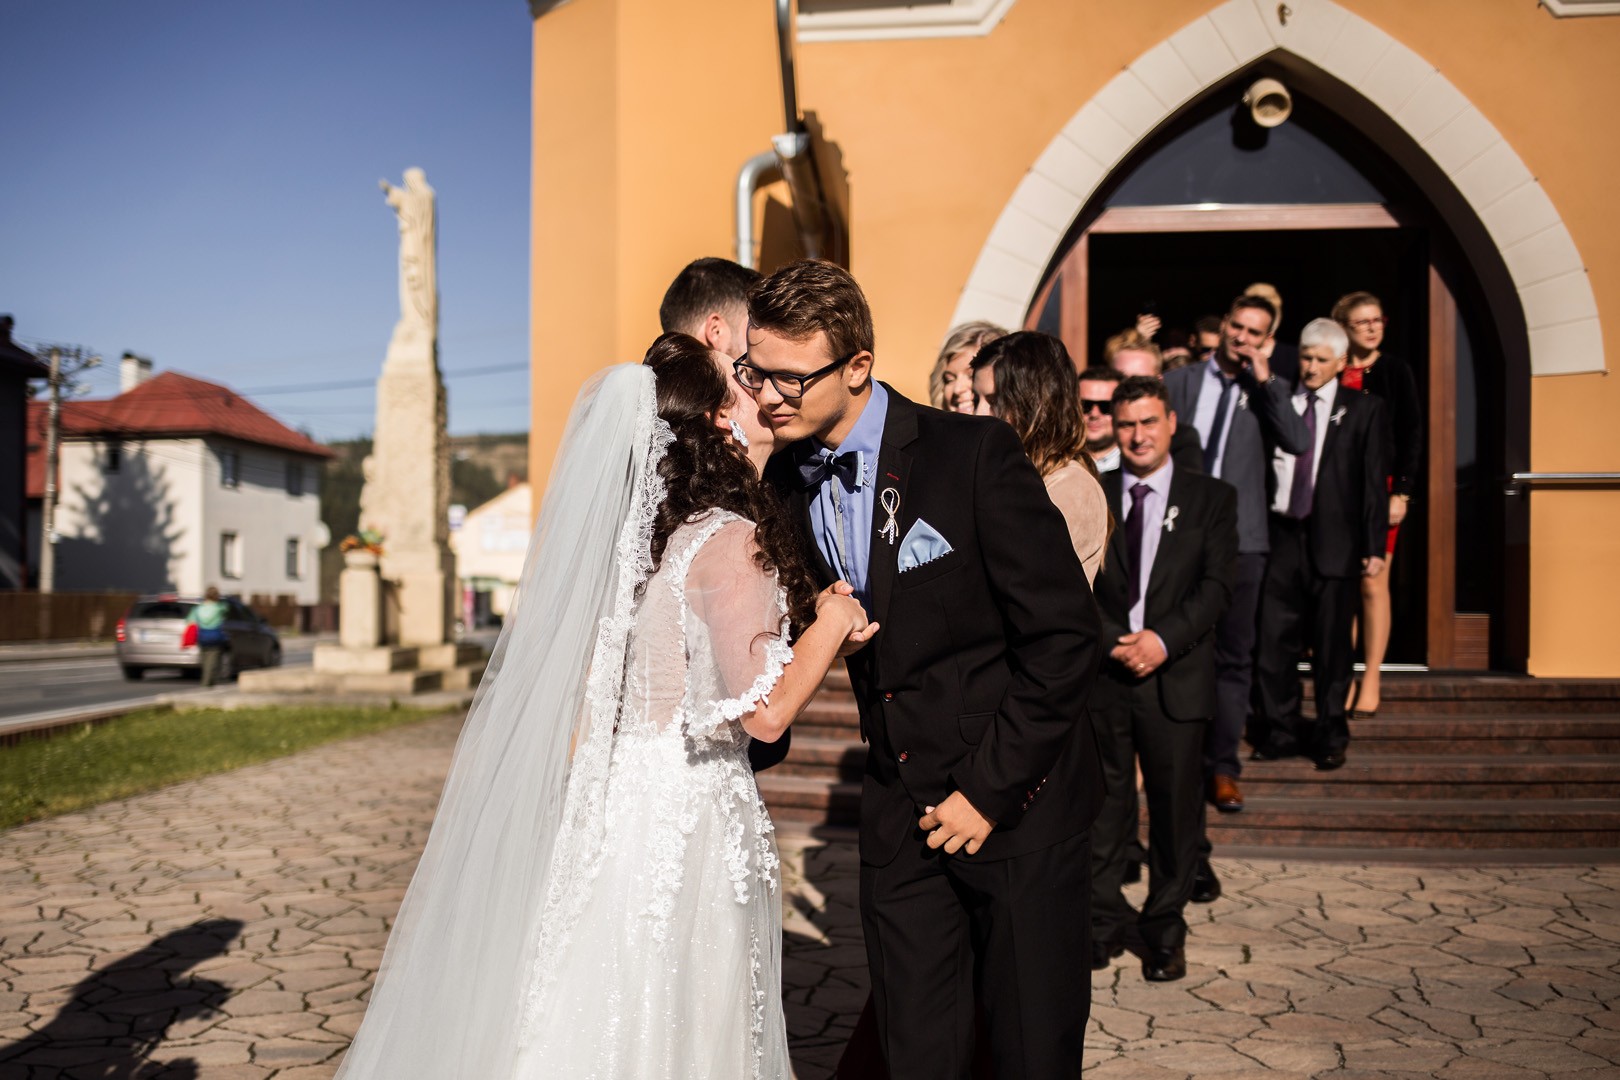 Wedding photos Zdenka and Marko - 0185.jpg